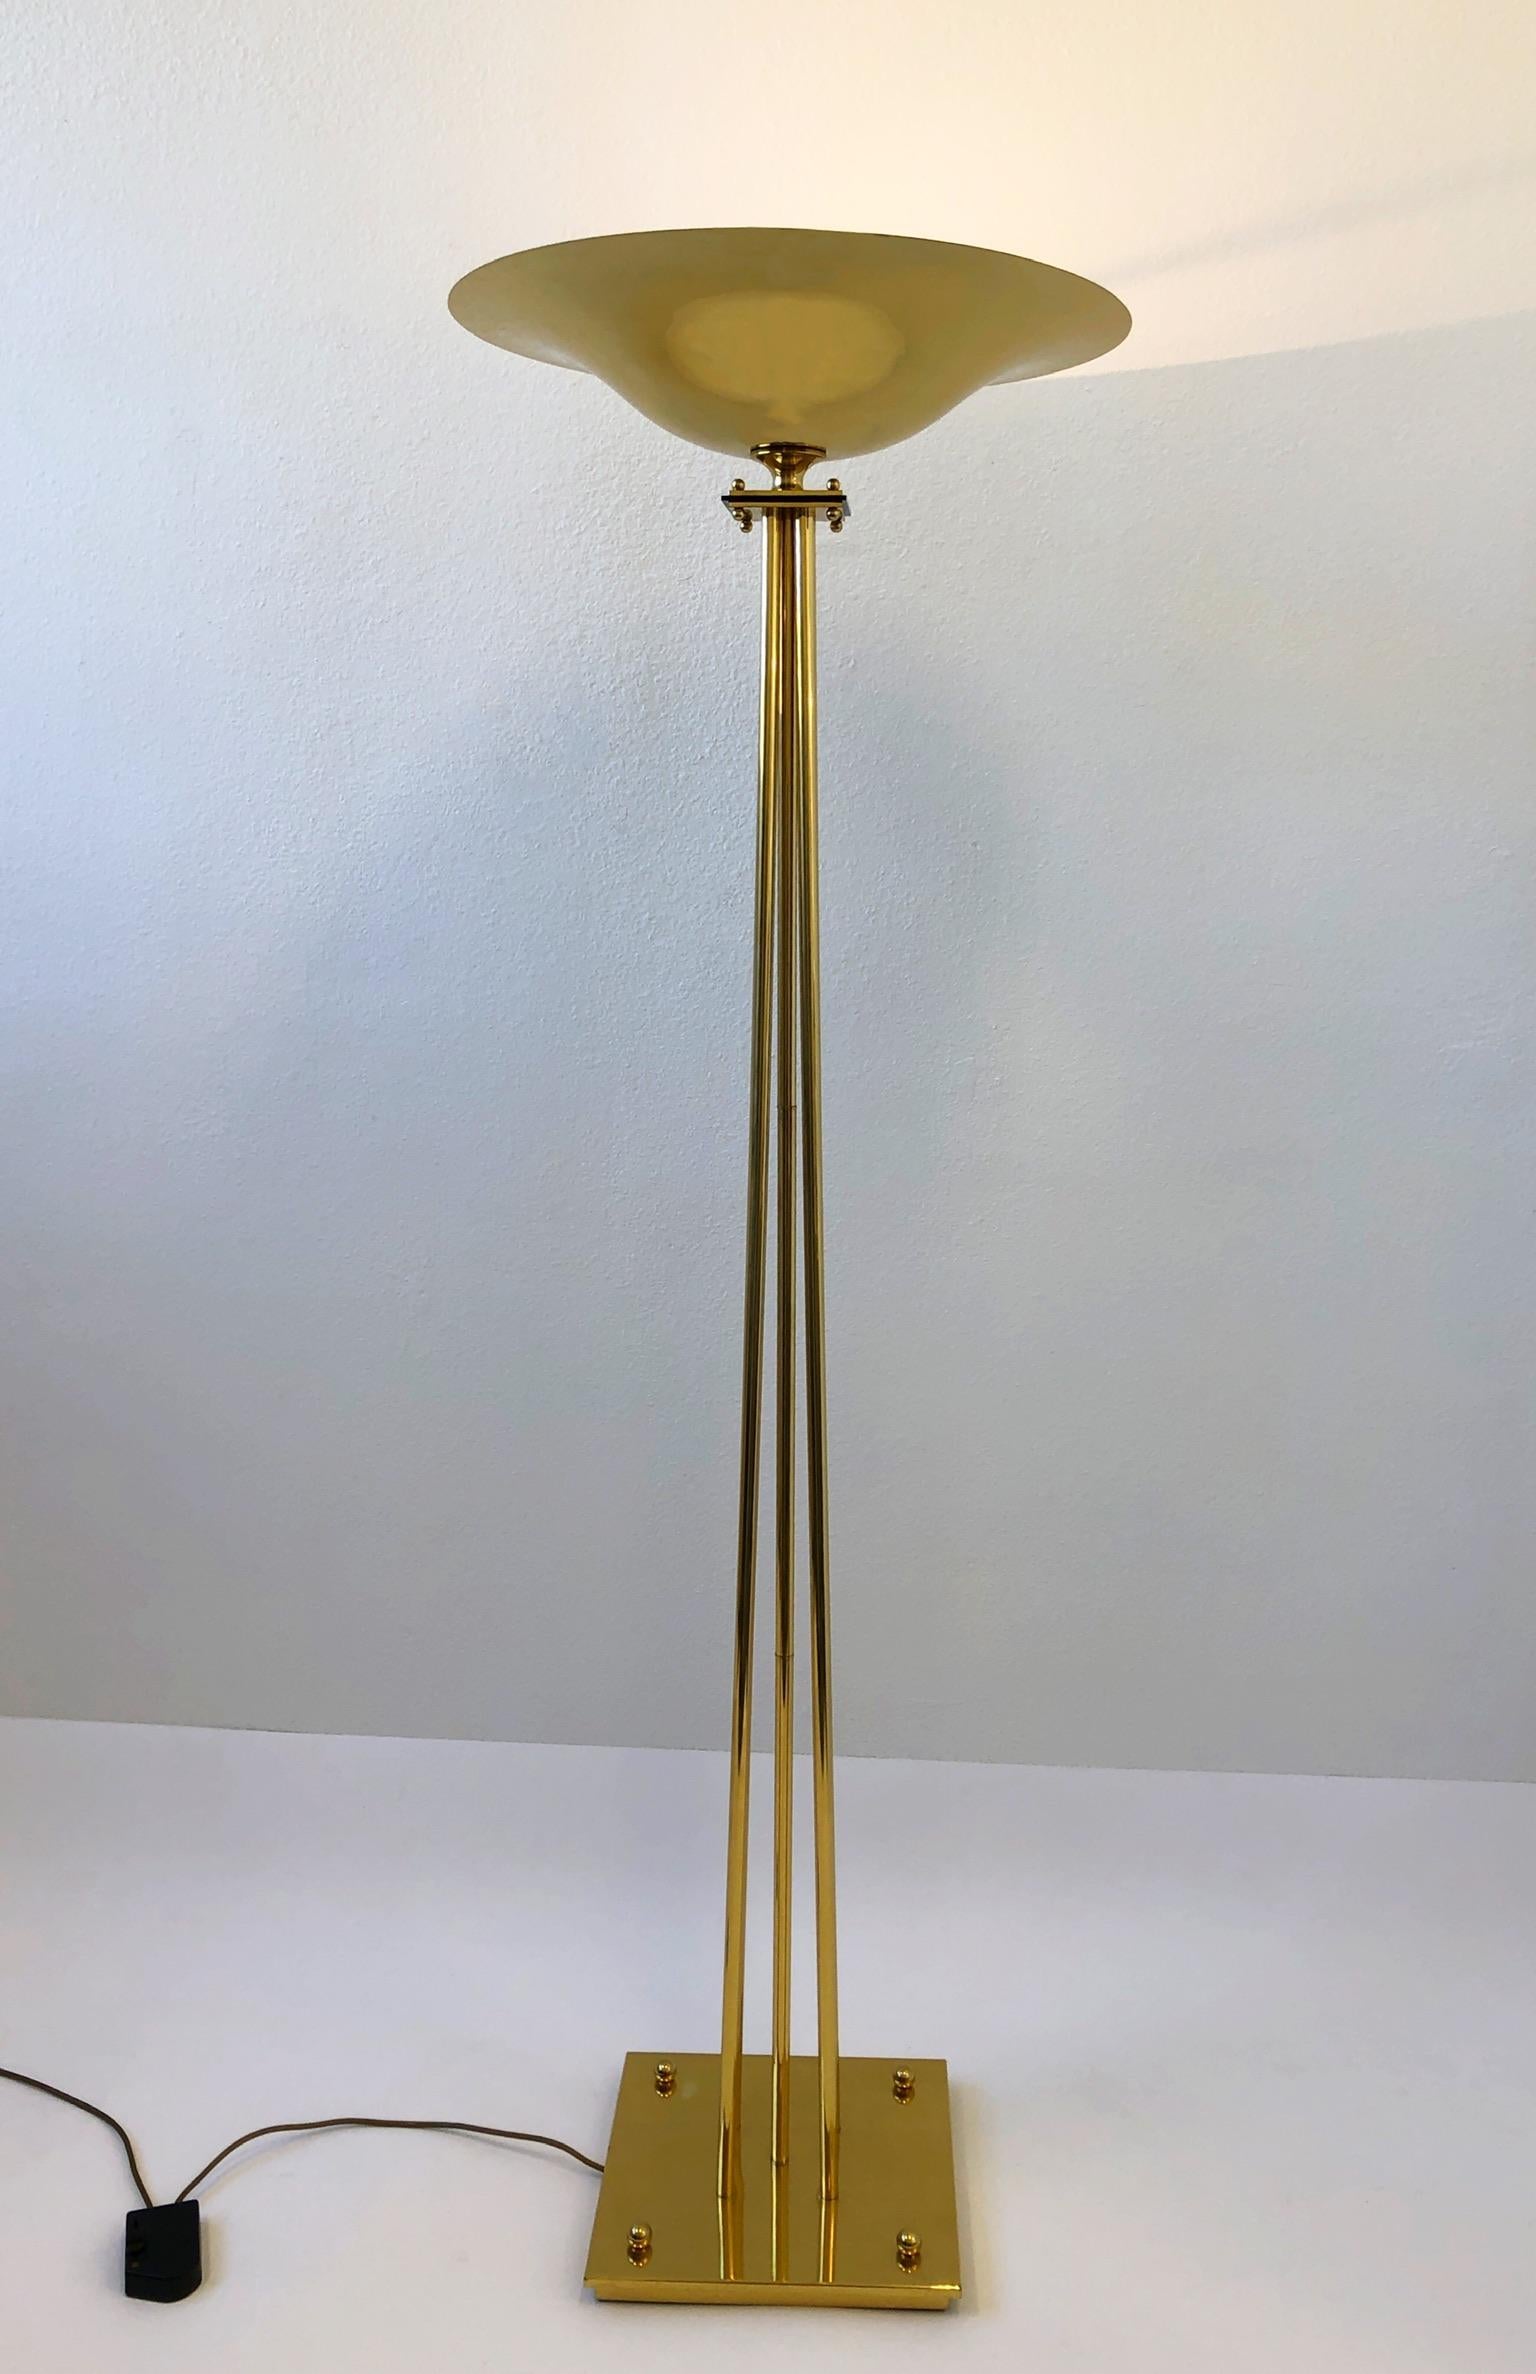 Große italienische Stehlampe aus poliertem Messing, Design von Prearo aus den 1980er Jahren.
Sie kann mit einer 300-Watt-Halogenlampe betrieben werden und verfügt über einen integrierten Dimmer.
Auf der Unterseite mit Prearo und Made in Italy